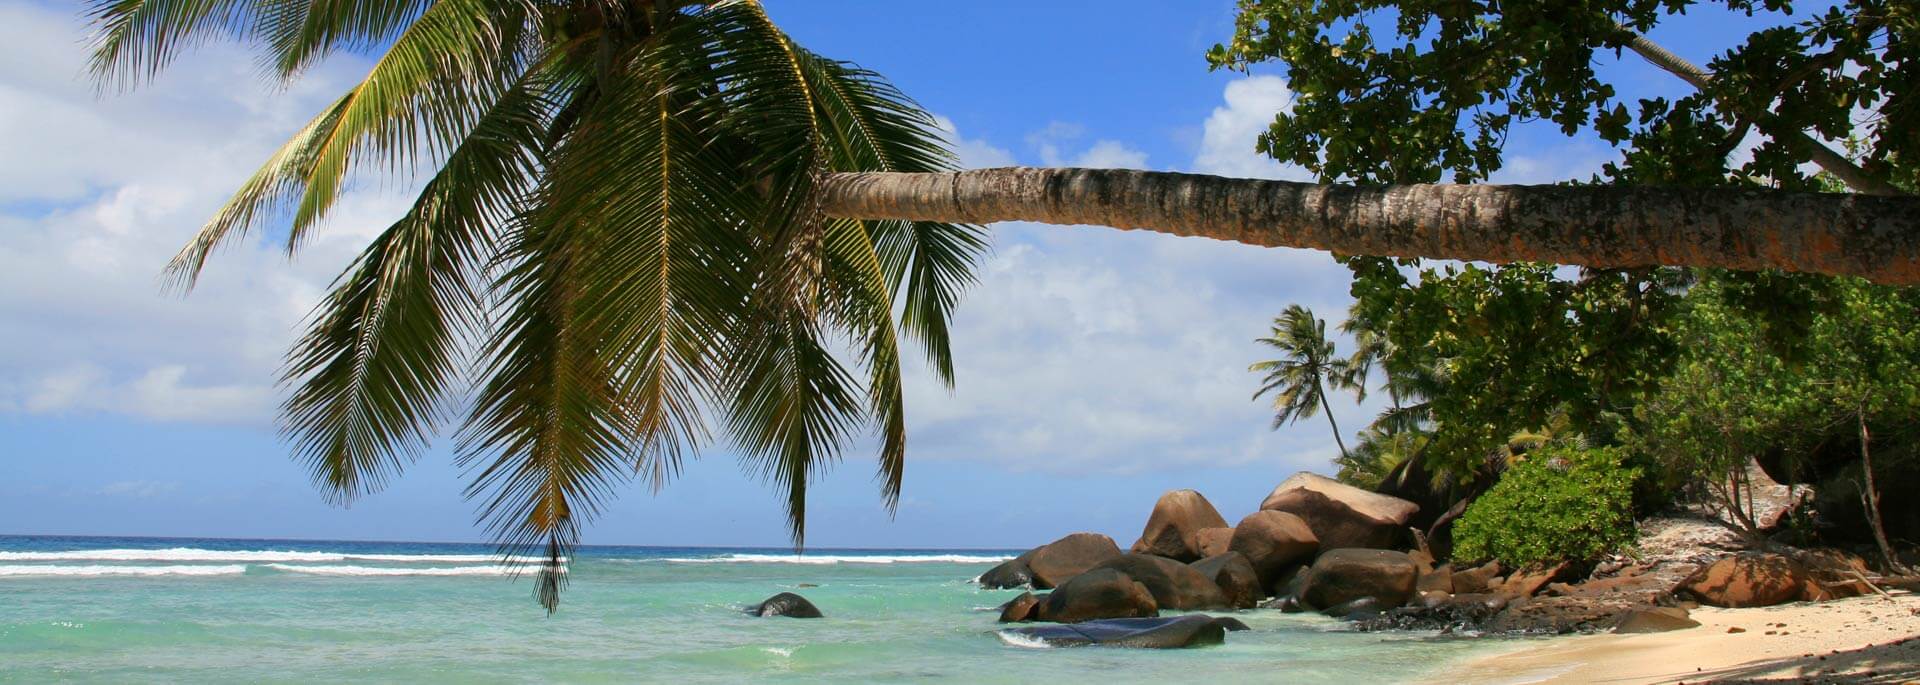 Fotos: Seychellen-Insel Silhouette